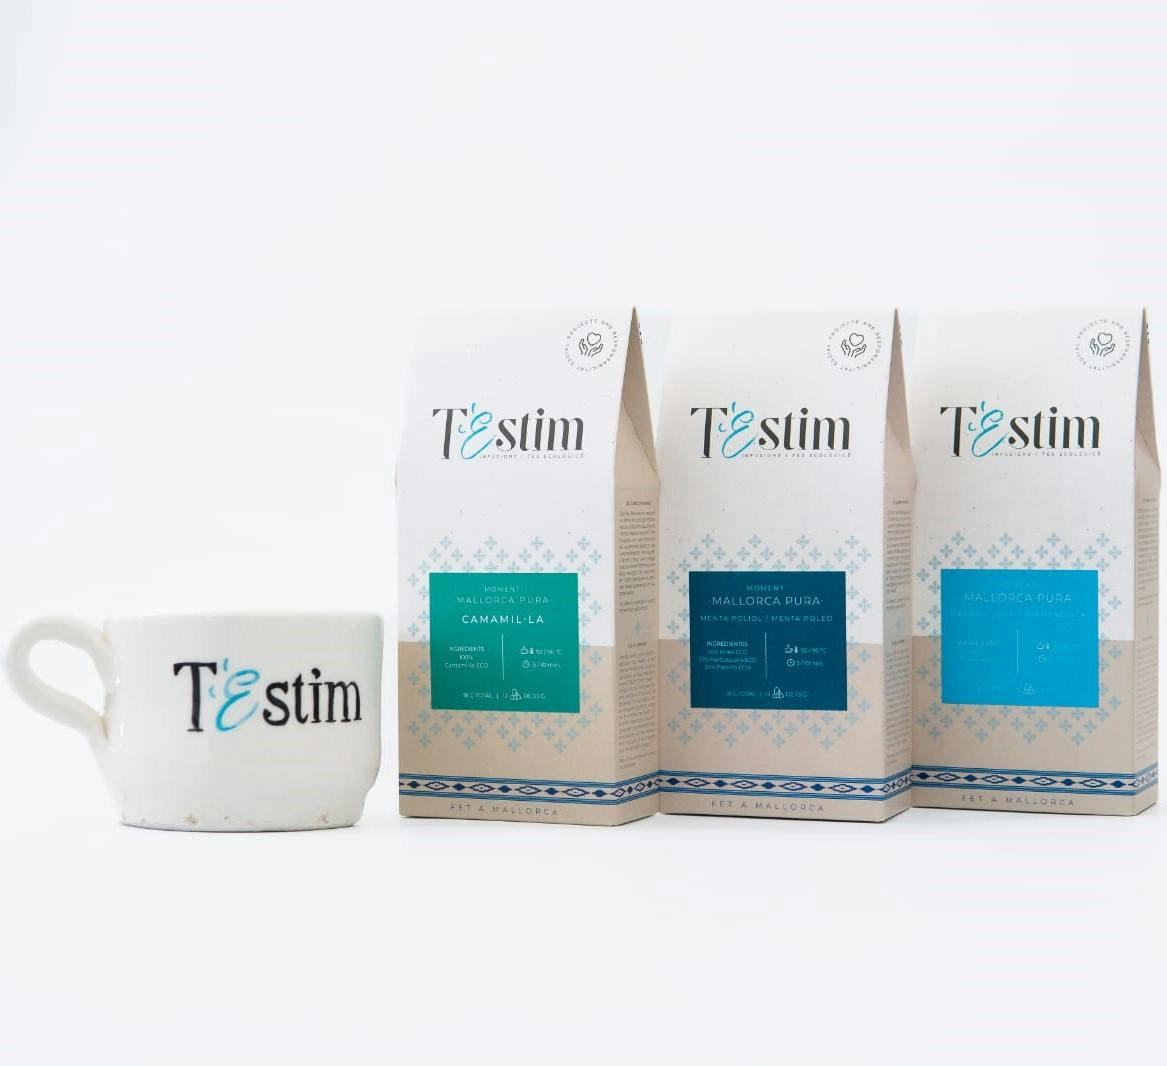 4 productos de T'Estim - 3 infusiones y 1 taza